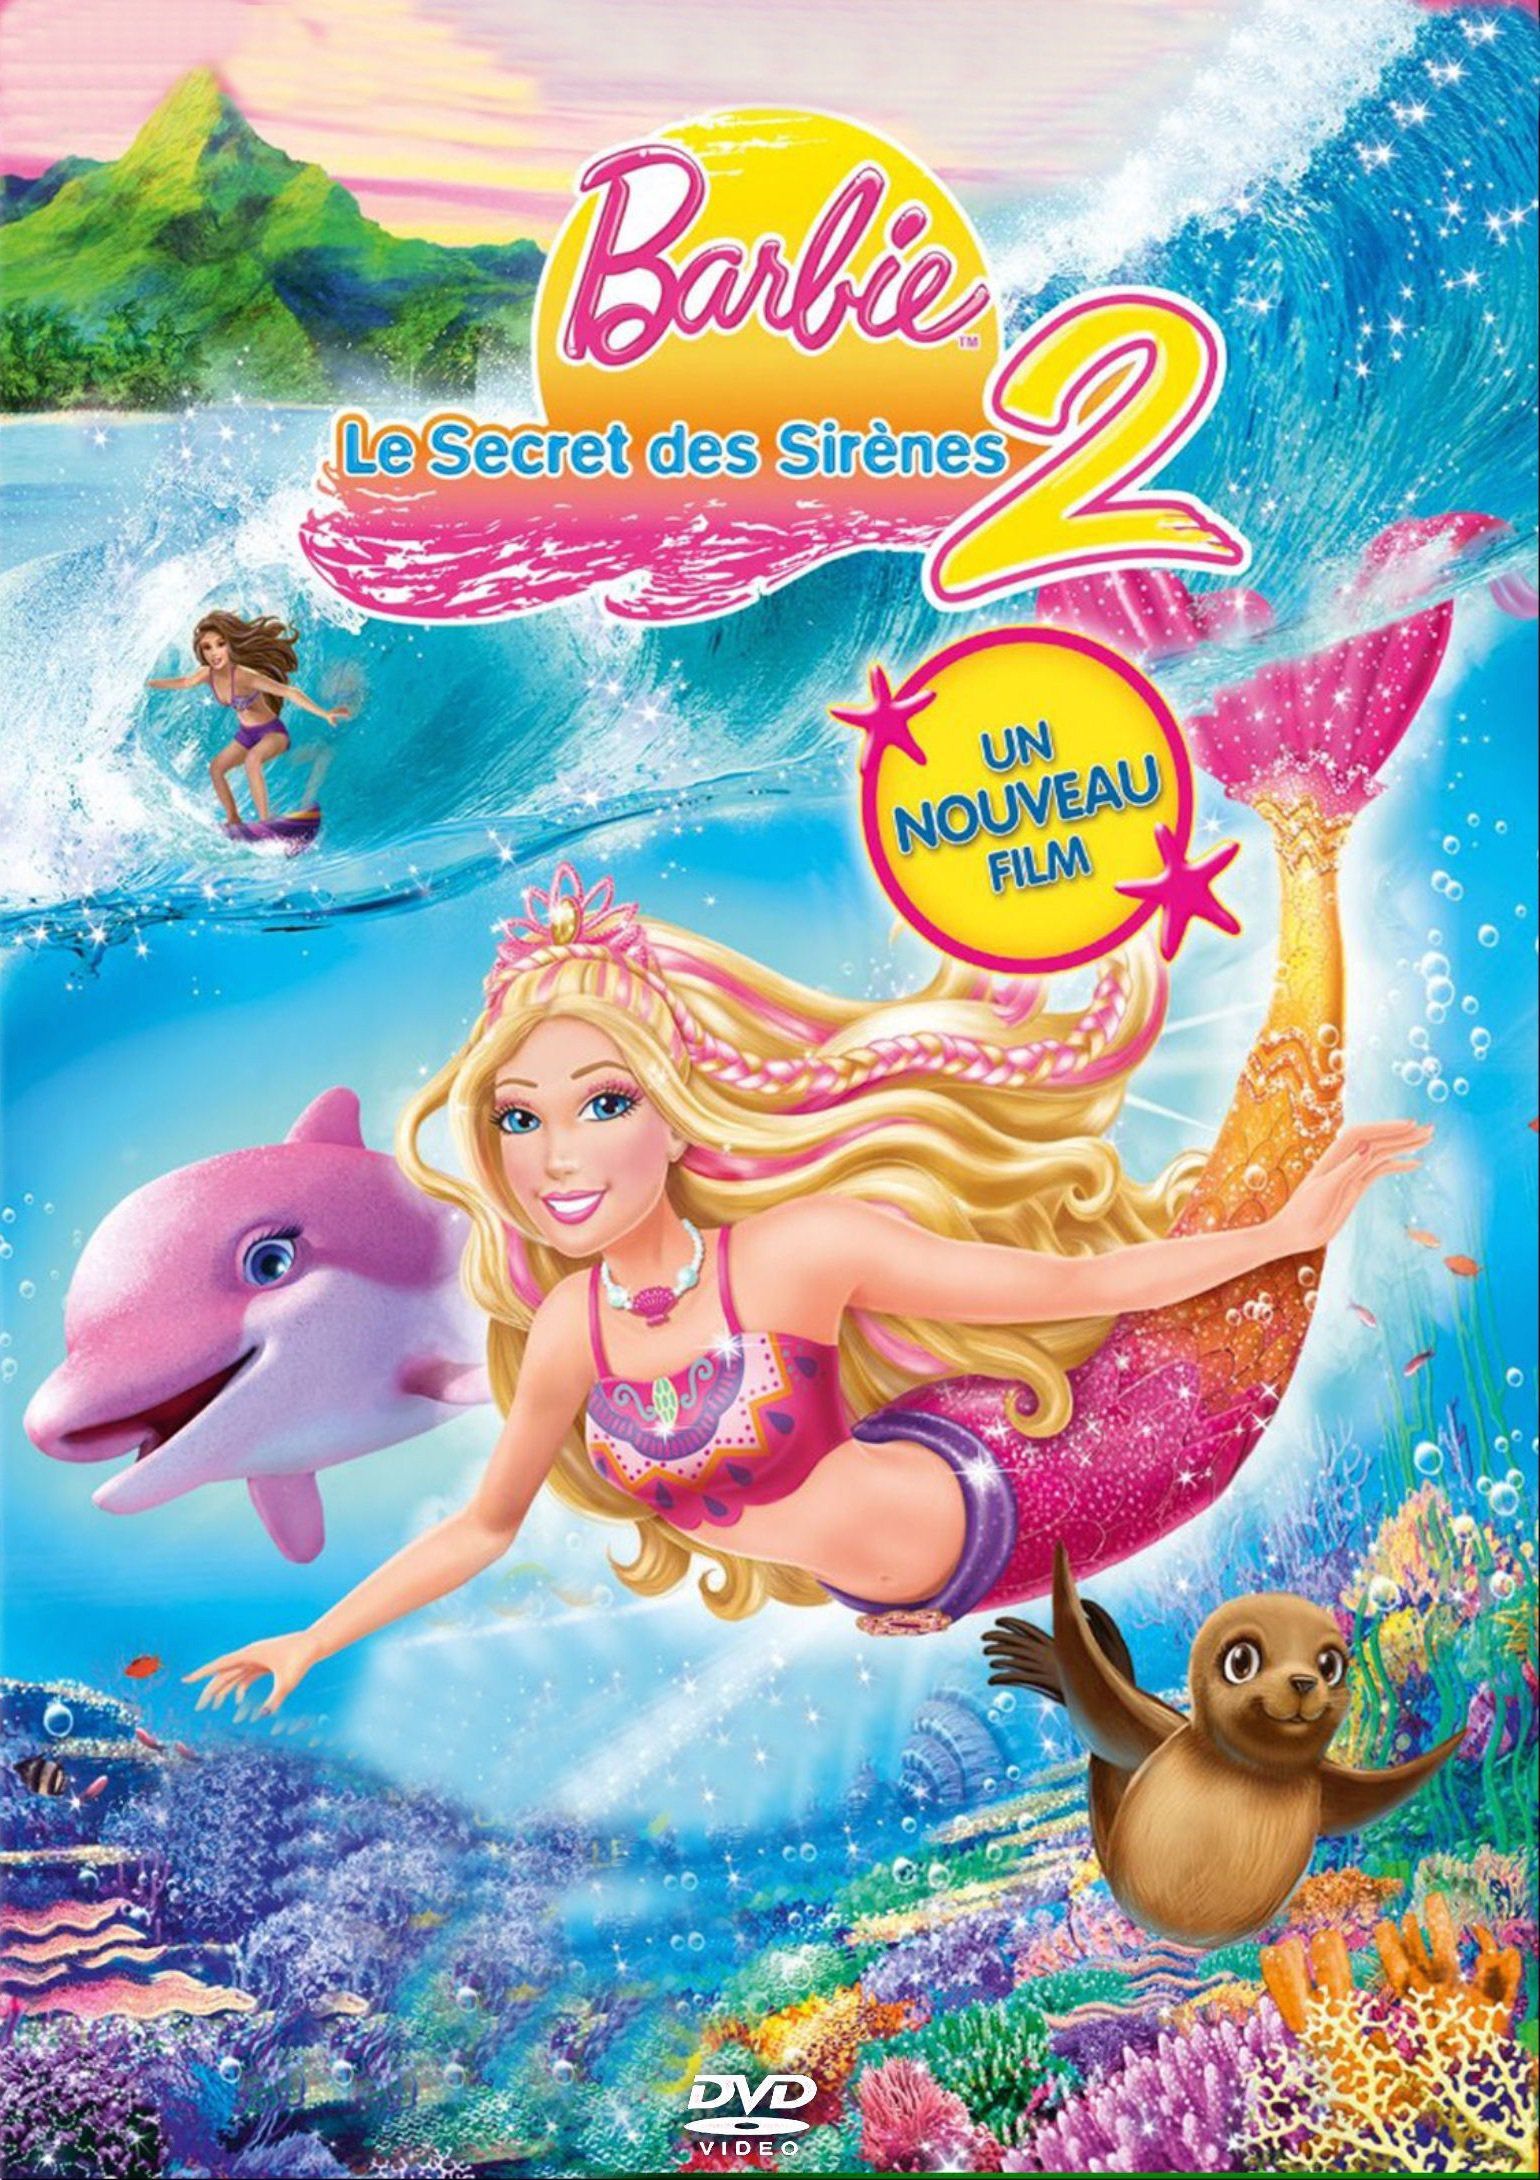 Barbie et le Secret des sirènes 2 - Long-métrage d'animation (2012) streaming VF gratuit complet